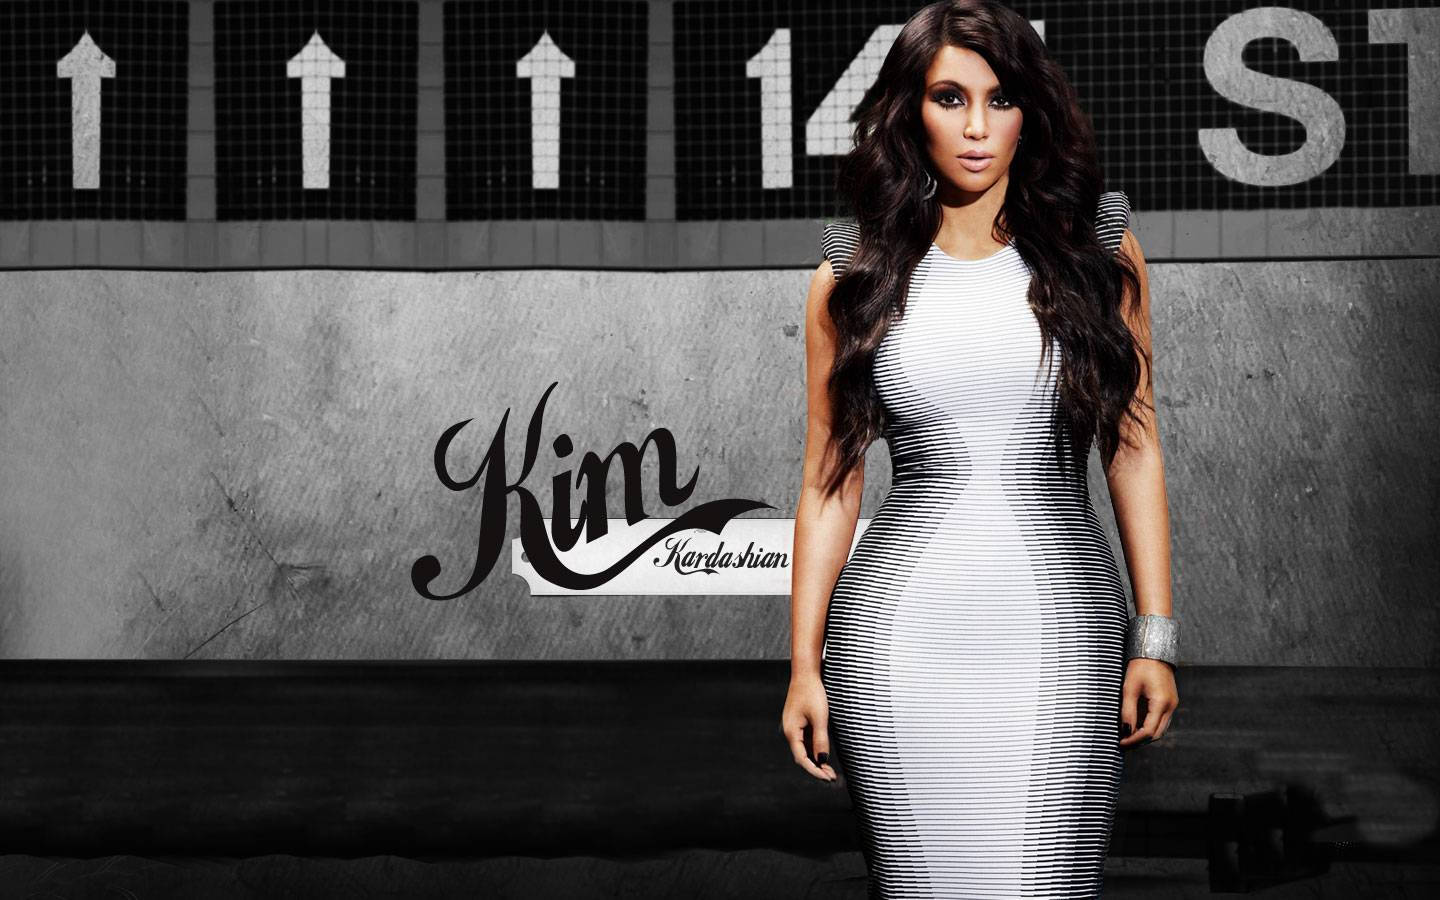 1440x900 Bibi Deno - Kim Kardashian Wallpaper, 1440x900 For Pc & Mac, Tablet Wallpaper